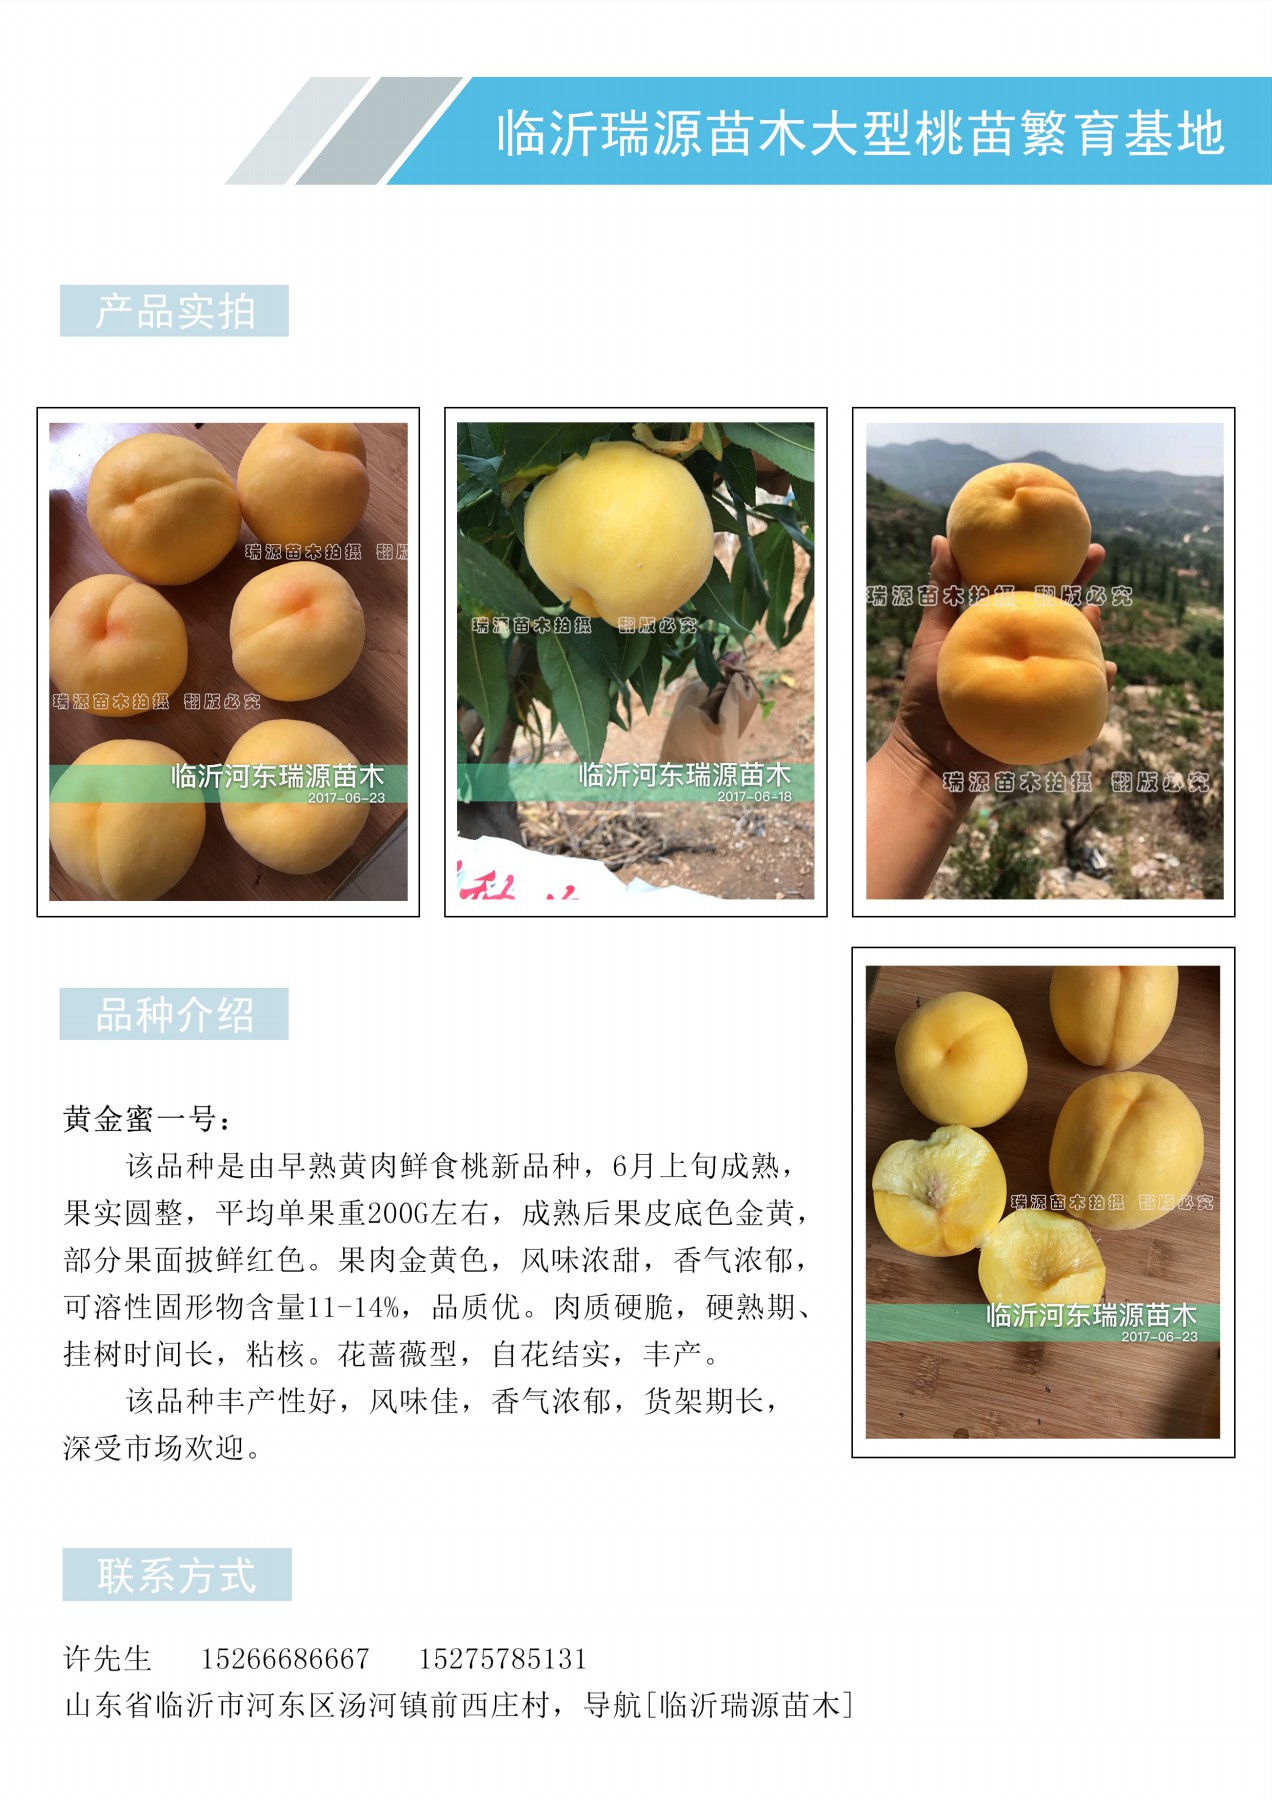 桃子新品种有哪些_桃子新品种有哪些品种介绍